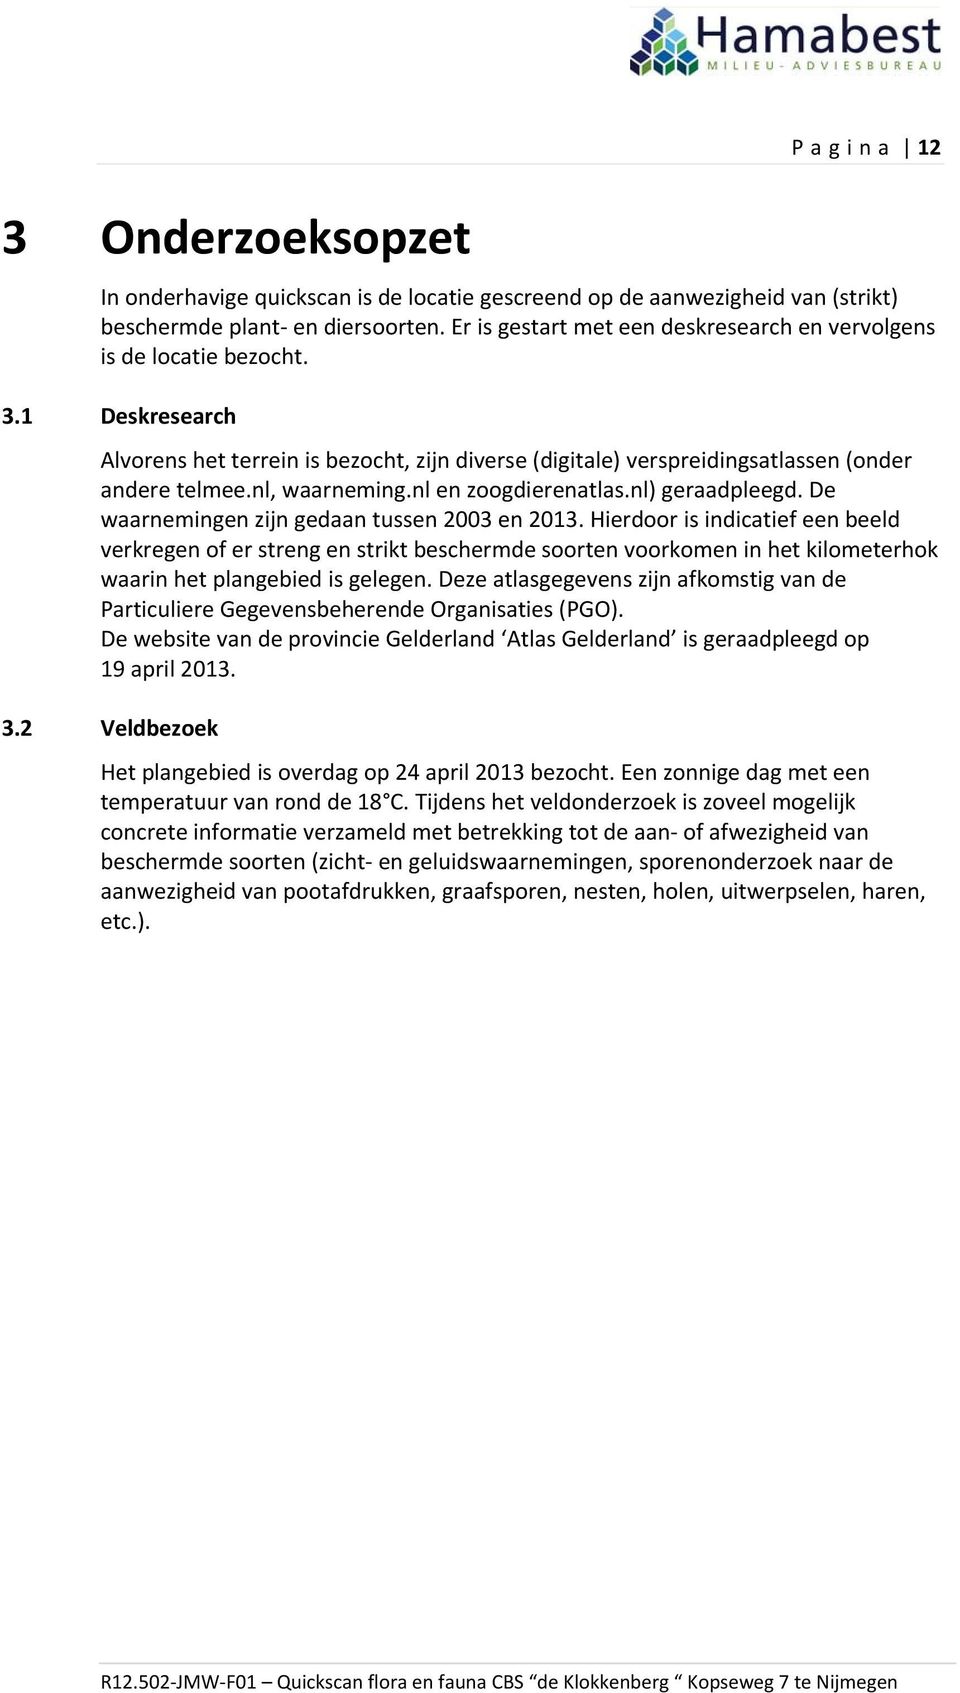 nl, waarneming.nl en zoogdierenatlas.nl) geraadpleegd. De waarnemingen zijn gedaan tussen 2003 en 2013.